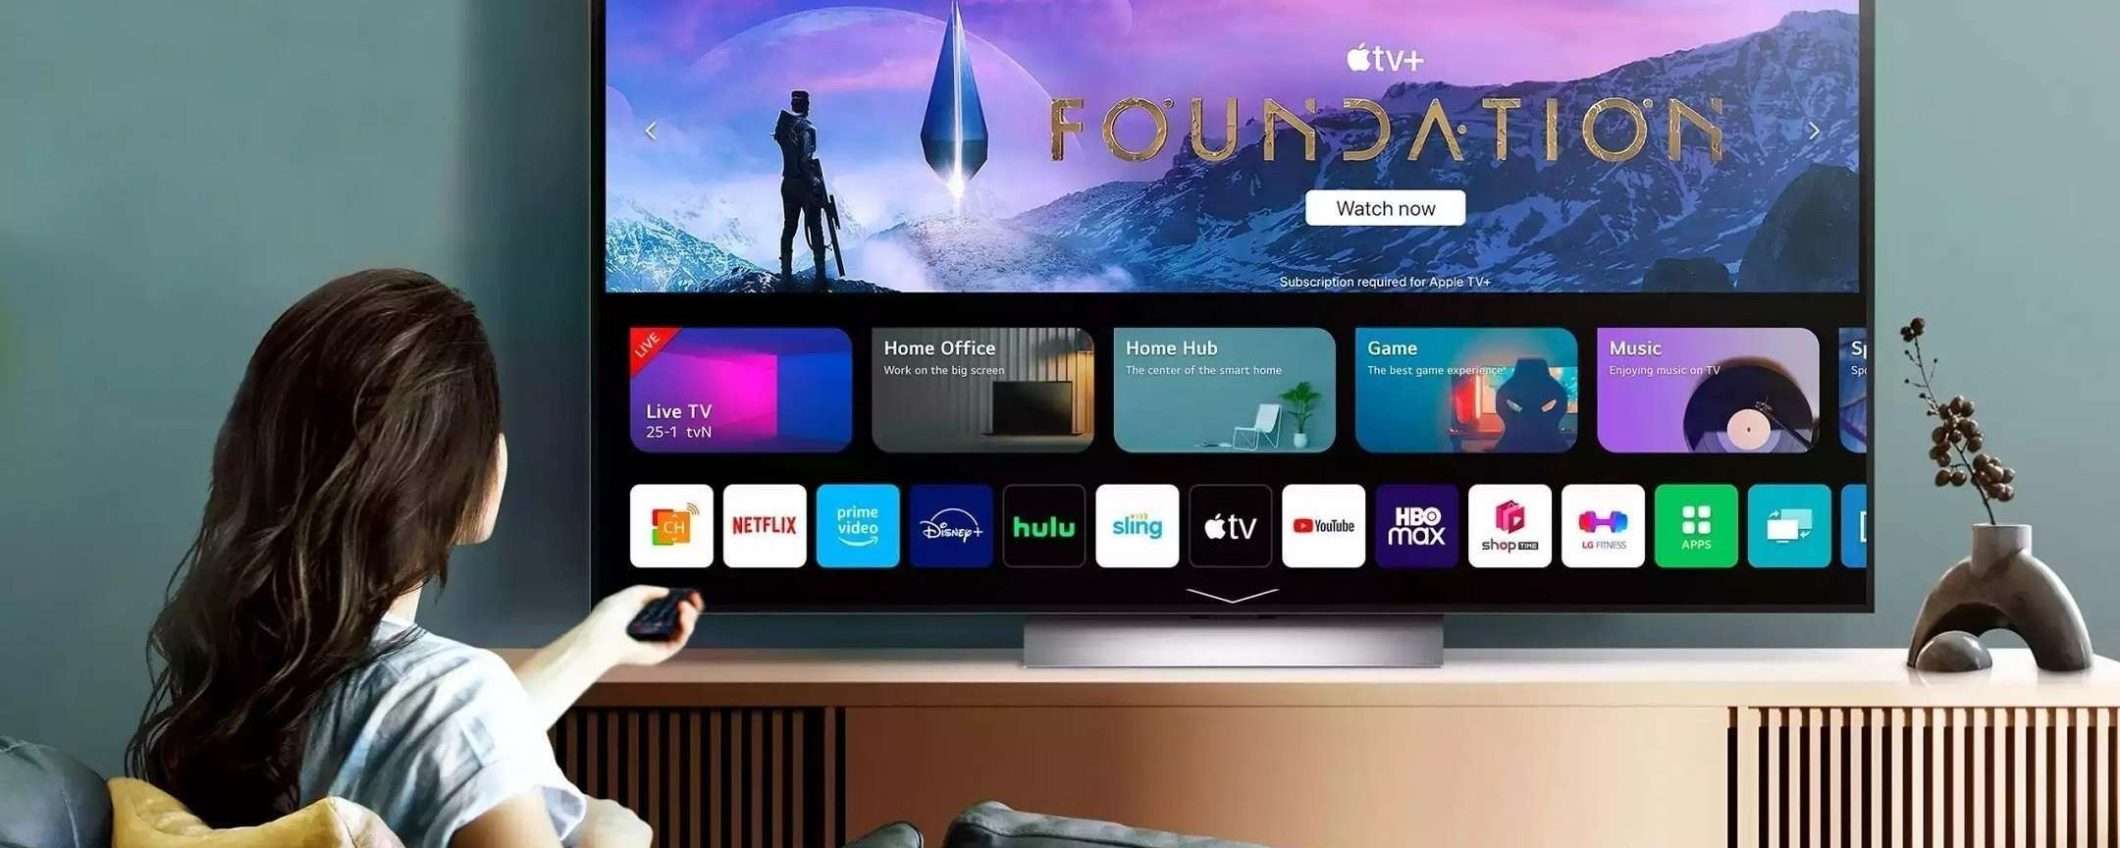 Smart TV 4K di LG in offerta a 319€ su Amazon: è un OTTIMO ACQUISTO